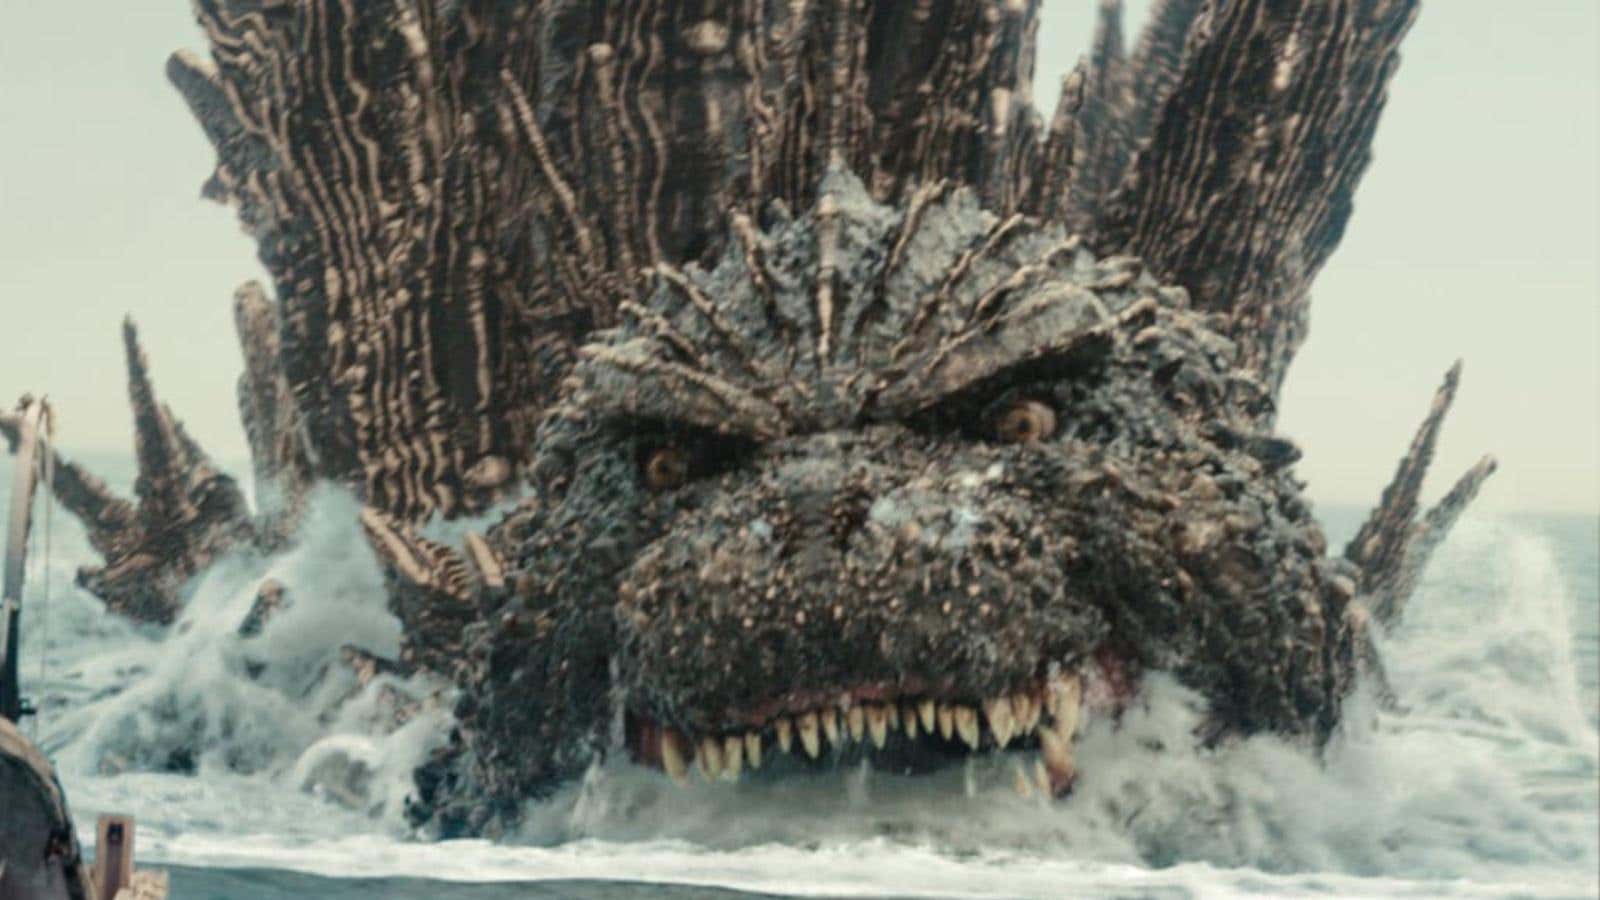 صورة للمقالة بعنوان Godzilla Minus One التي صنعت تاريخ Kaiju للتو بفوزها بجائزة الأوسكار